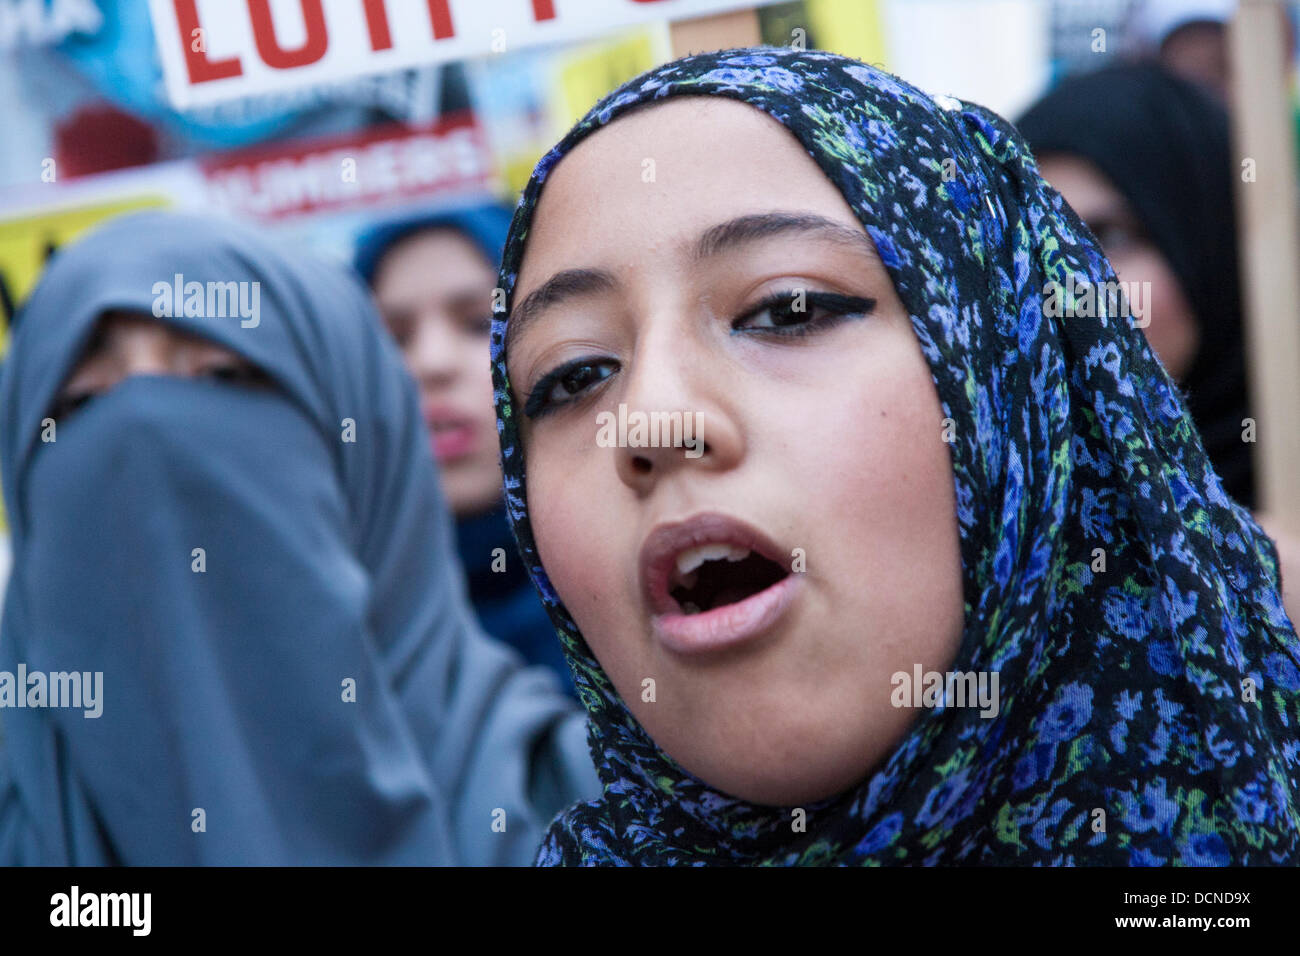 Londres, 20-08-2013. Une femme musulmane en dehors des slogans chants l'ambassade d'Egypte dans le cadre des manifestations contre l'occupation militaire de l'ancien président Morsi, élu démocratiquement. Banque D'Images